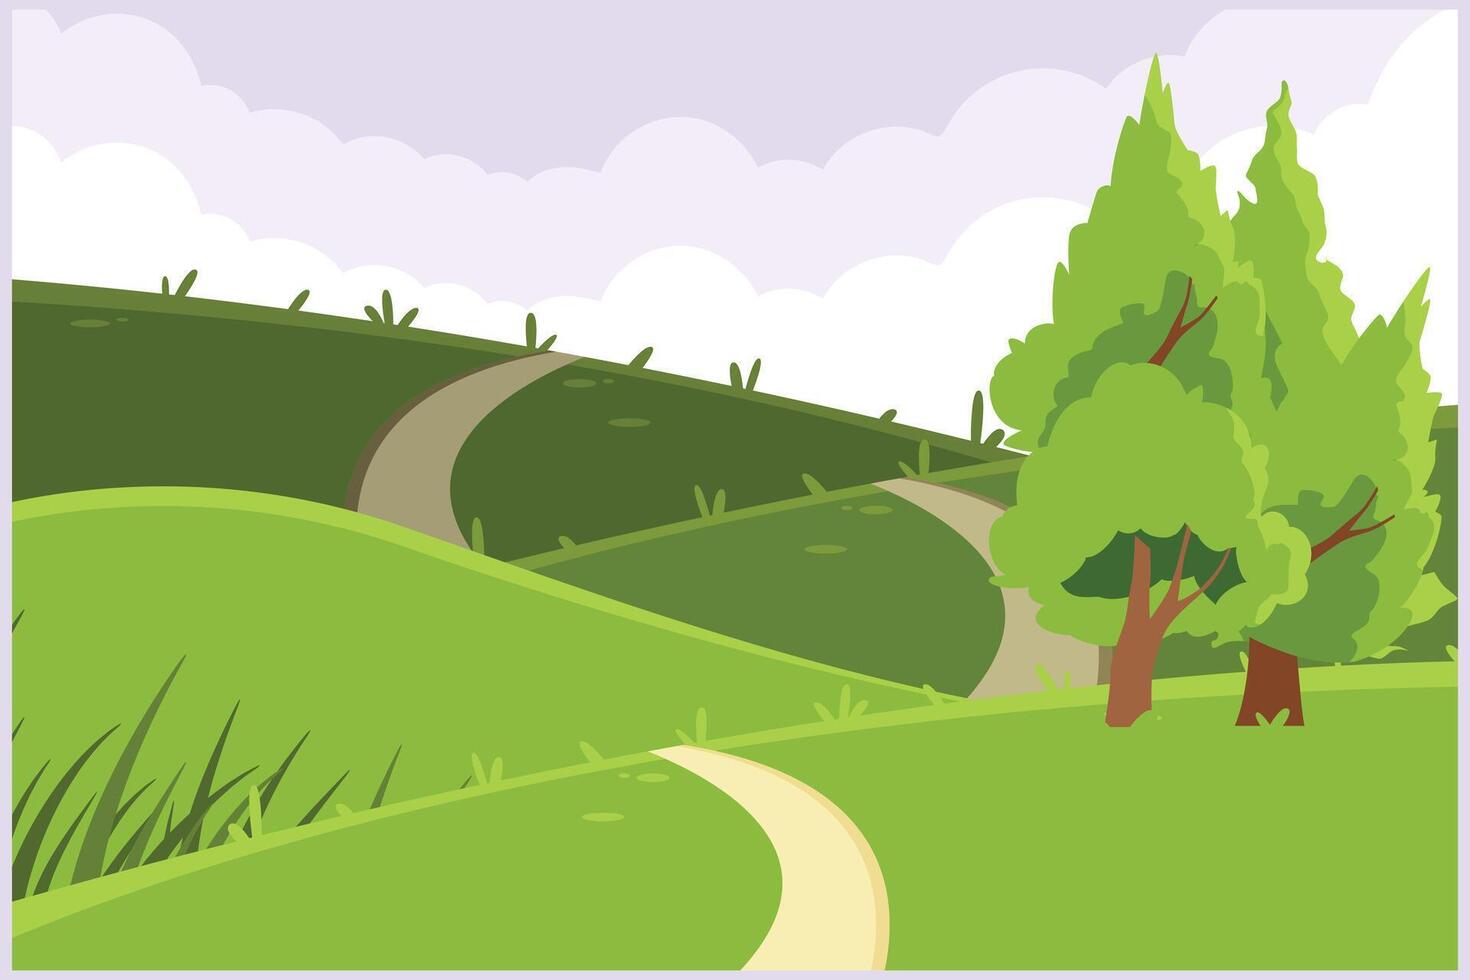 landschap met groen gras, bomen, lucht horizon en bergen. natuur concept. gekleurde vlak vector illustratie geïsoleerd.